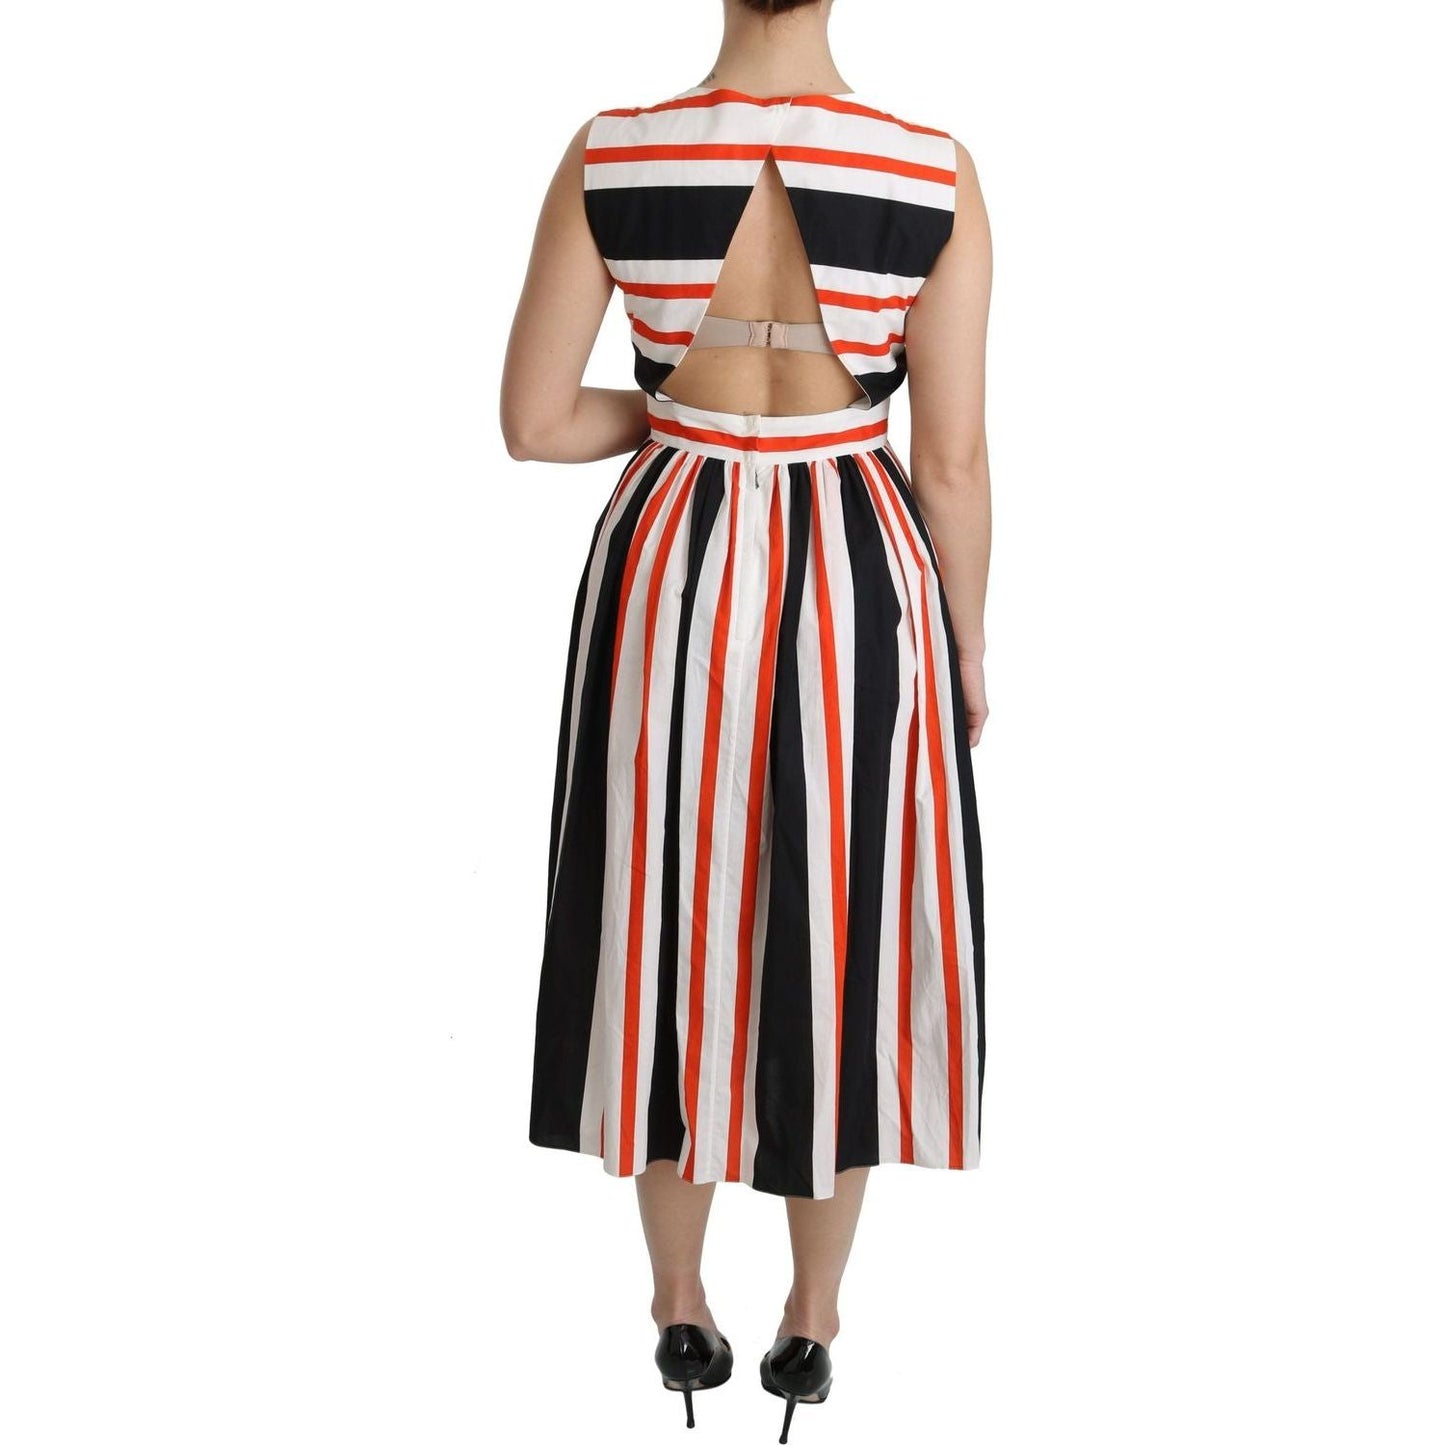 Dolce & Gabbana A-Line Pleated Midi Fashion Dress multicolor-stripes-a-line-pleated-midi-dress IMG_0233-scaled-5b5f1515-db9.jpg